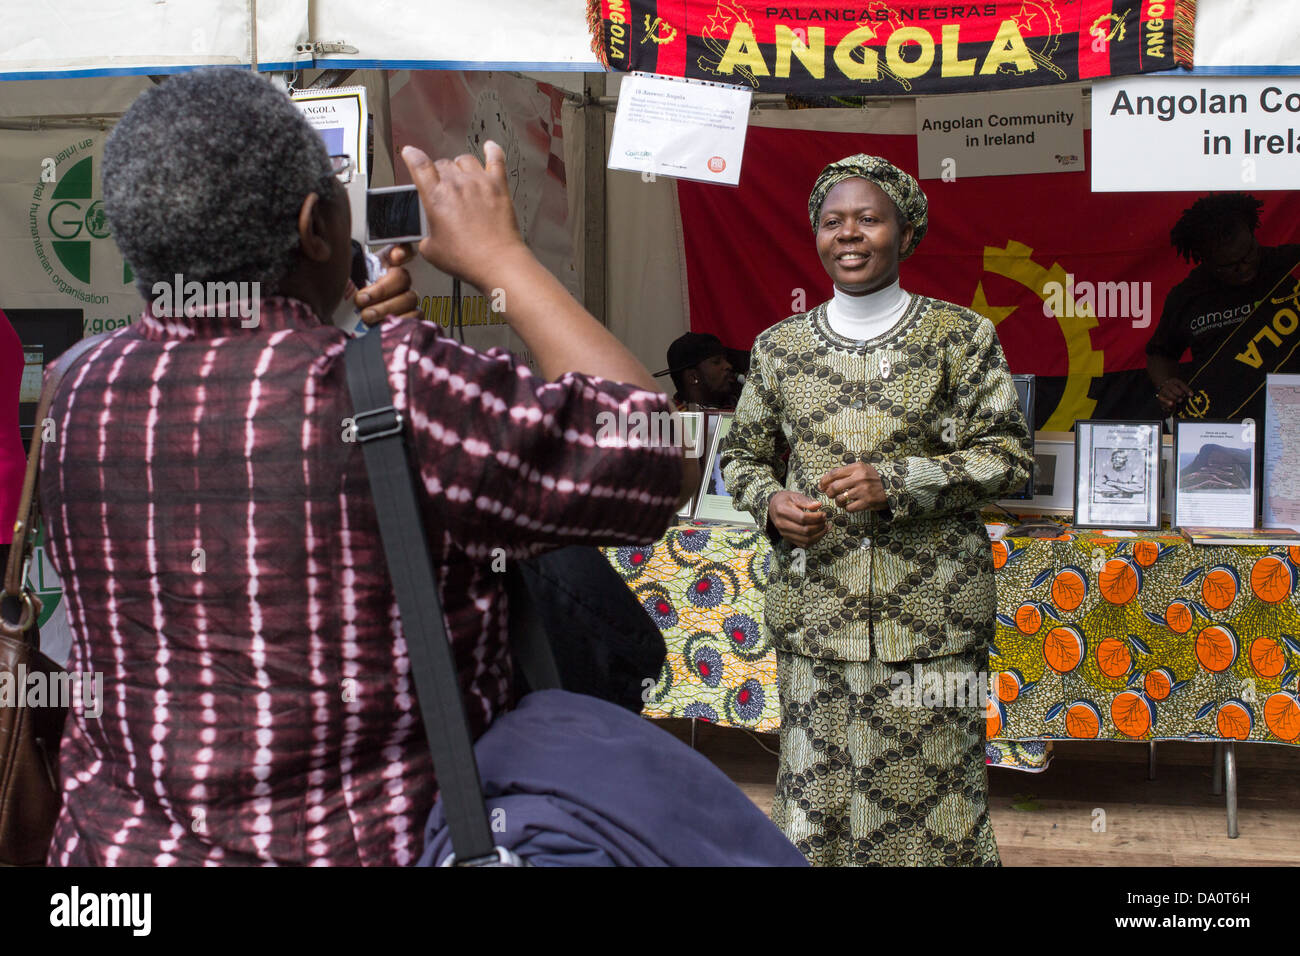 Une femme portant une tenue traditionnelle africaine obtient une photographie prise. Banque D'Images